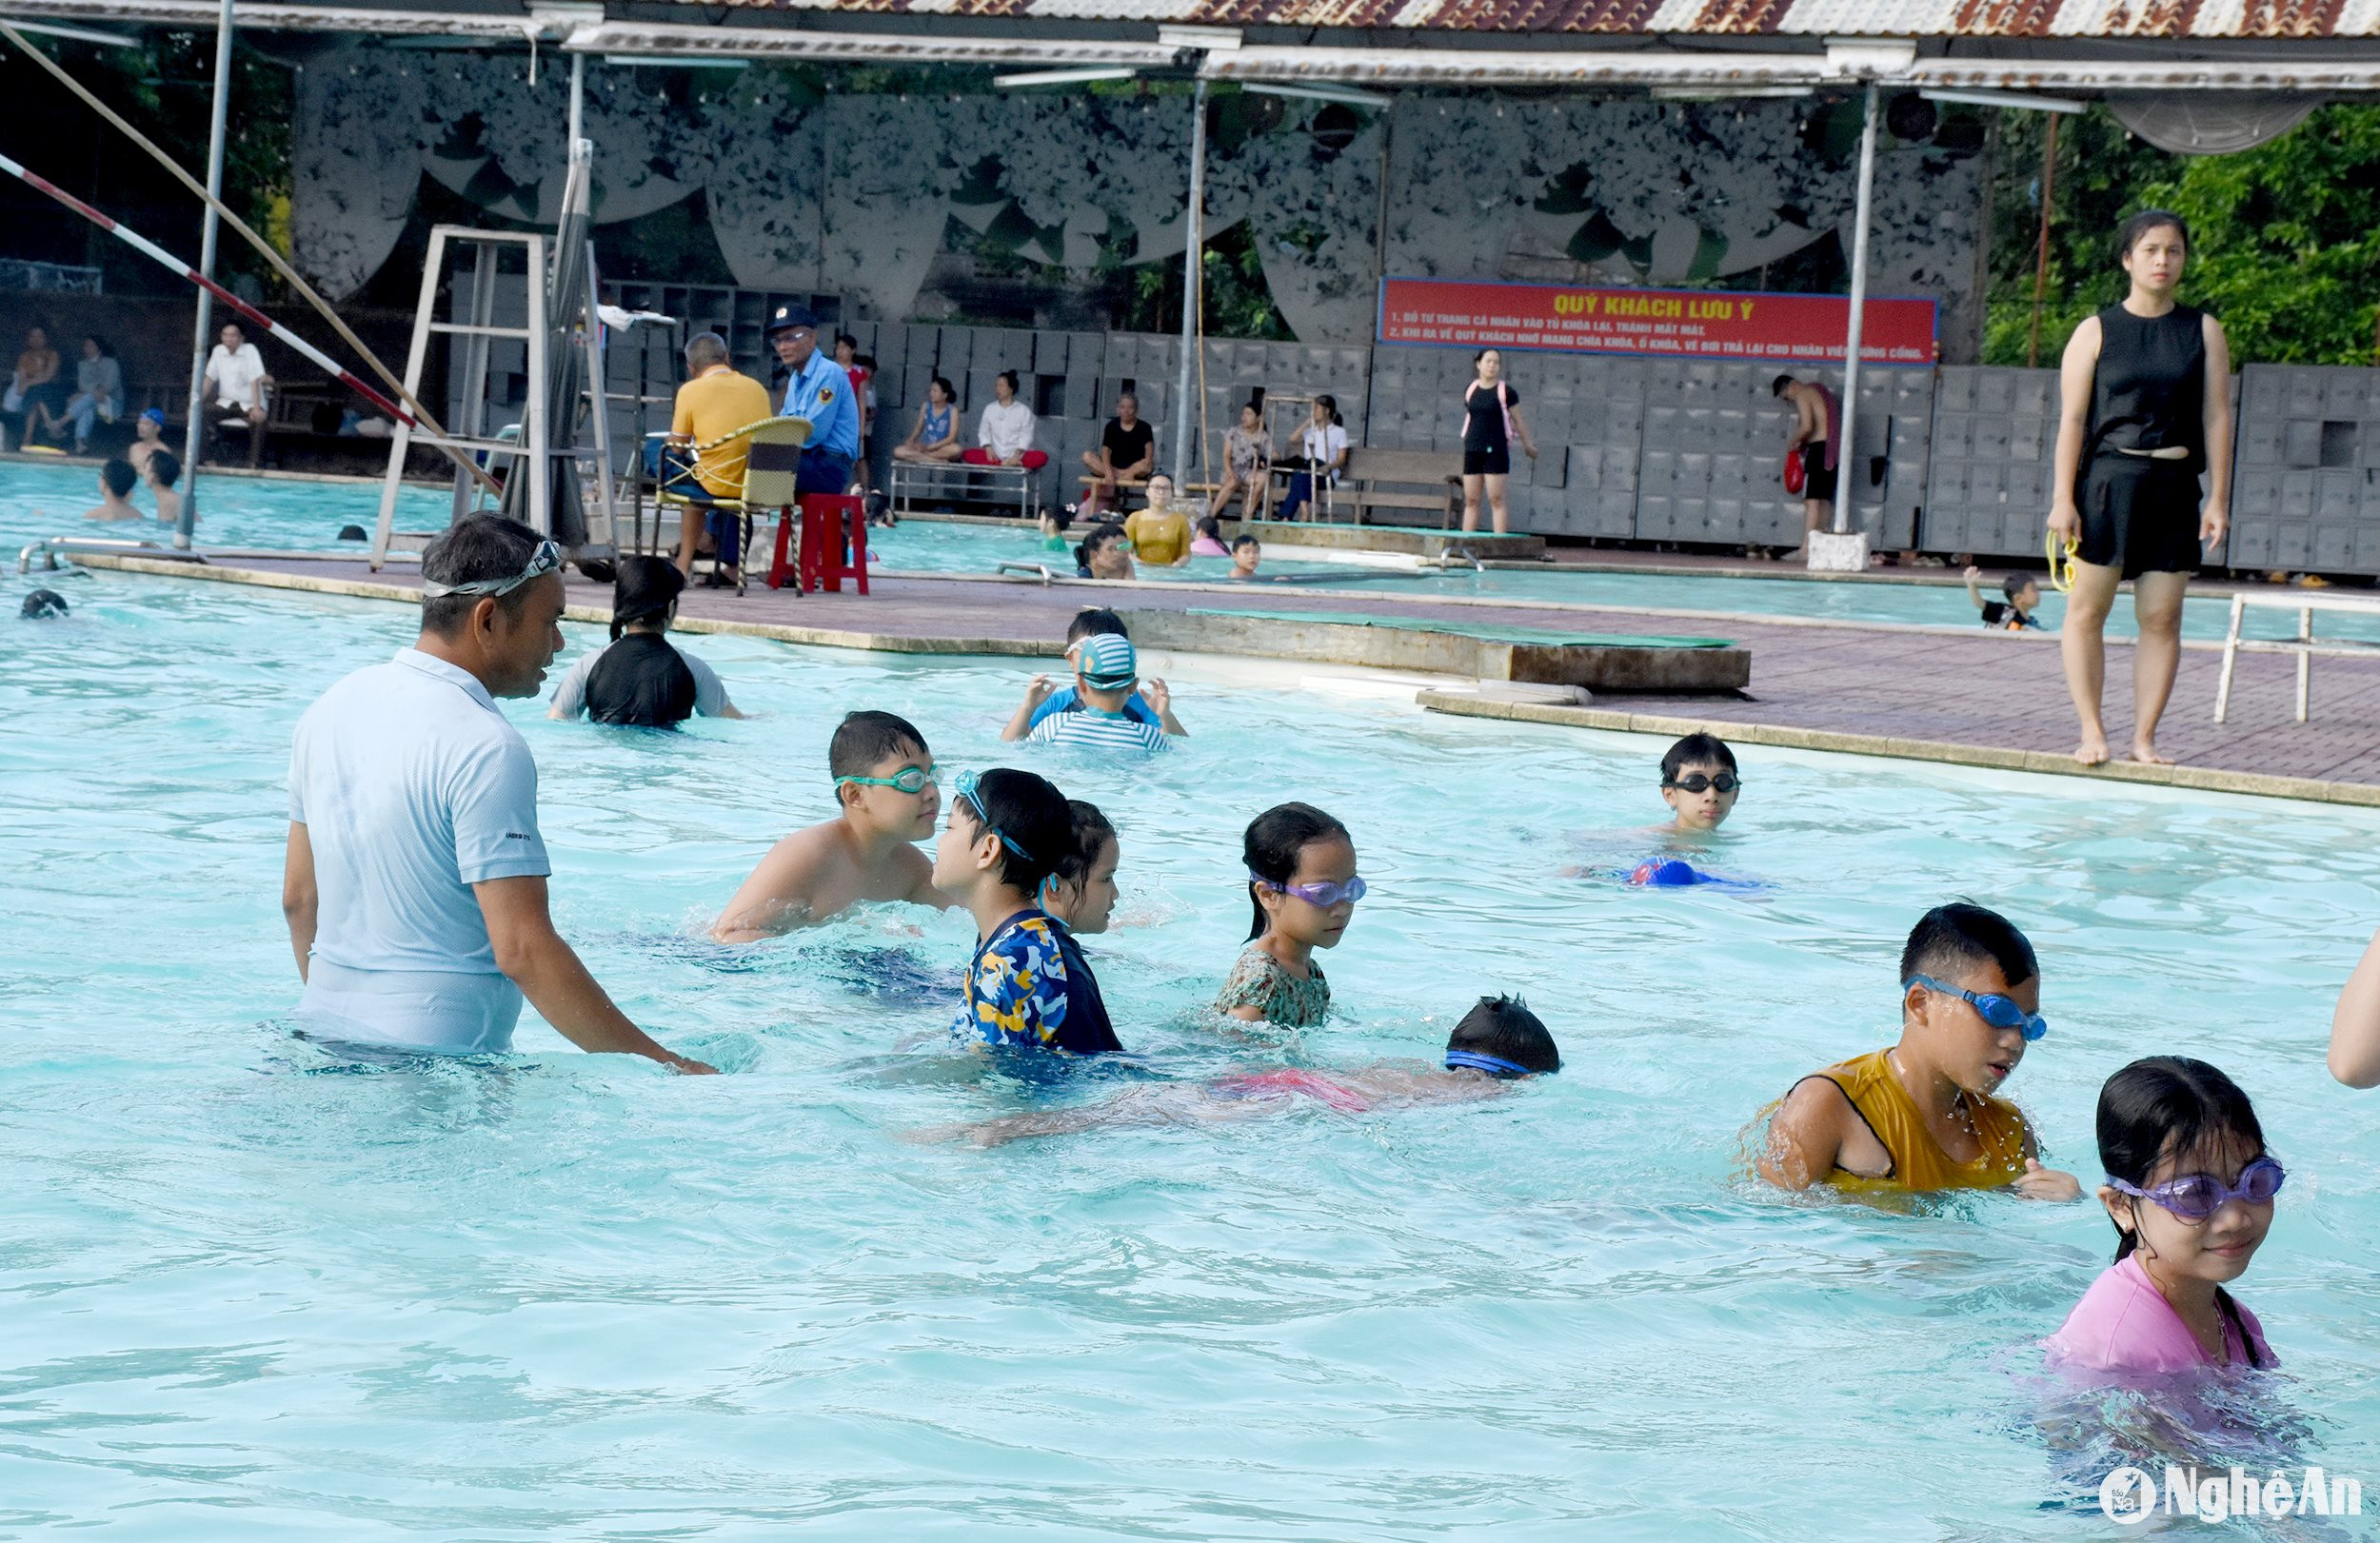 Tham gia khóa đào tạo, các học viên được hướng dẫn kỹ năng bơi và phòng, chống đuối nước. Ảnh: Công Khang